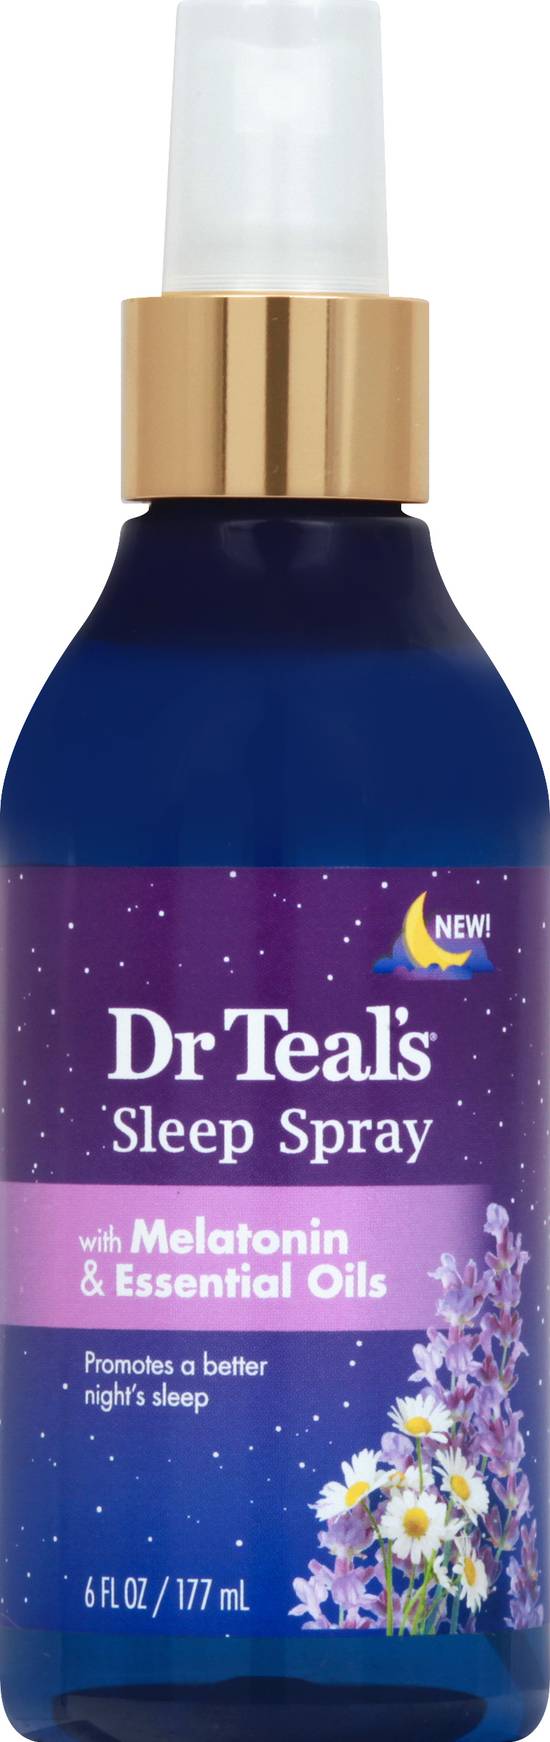 Dr Teal's Sleep Spray With Melatonin & Essential Oils